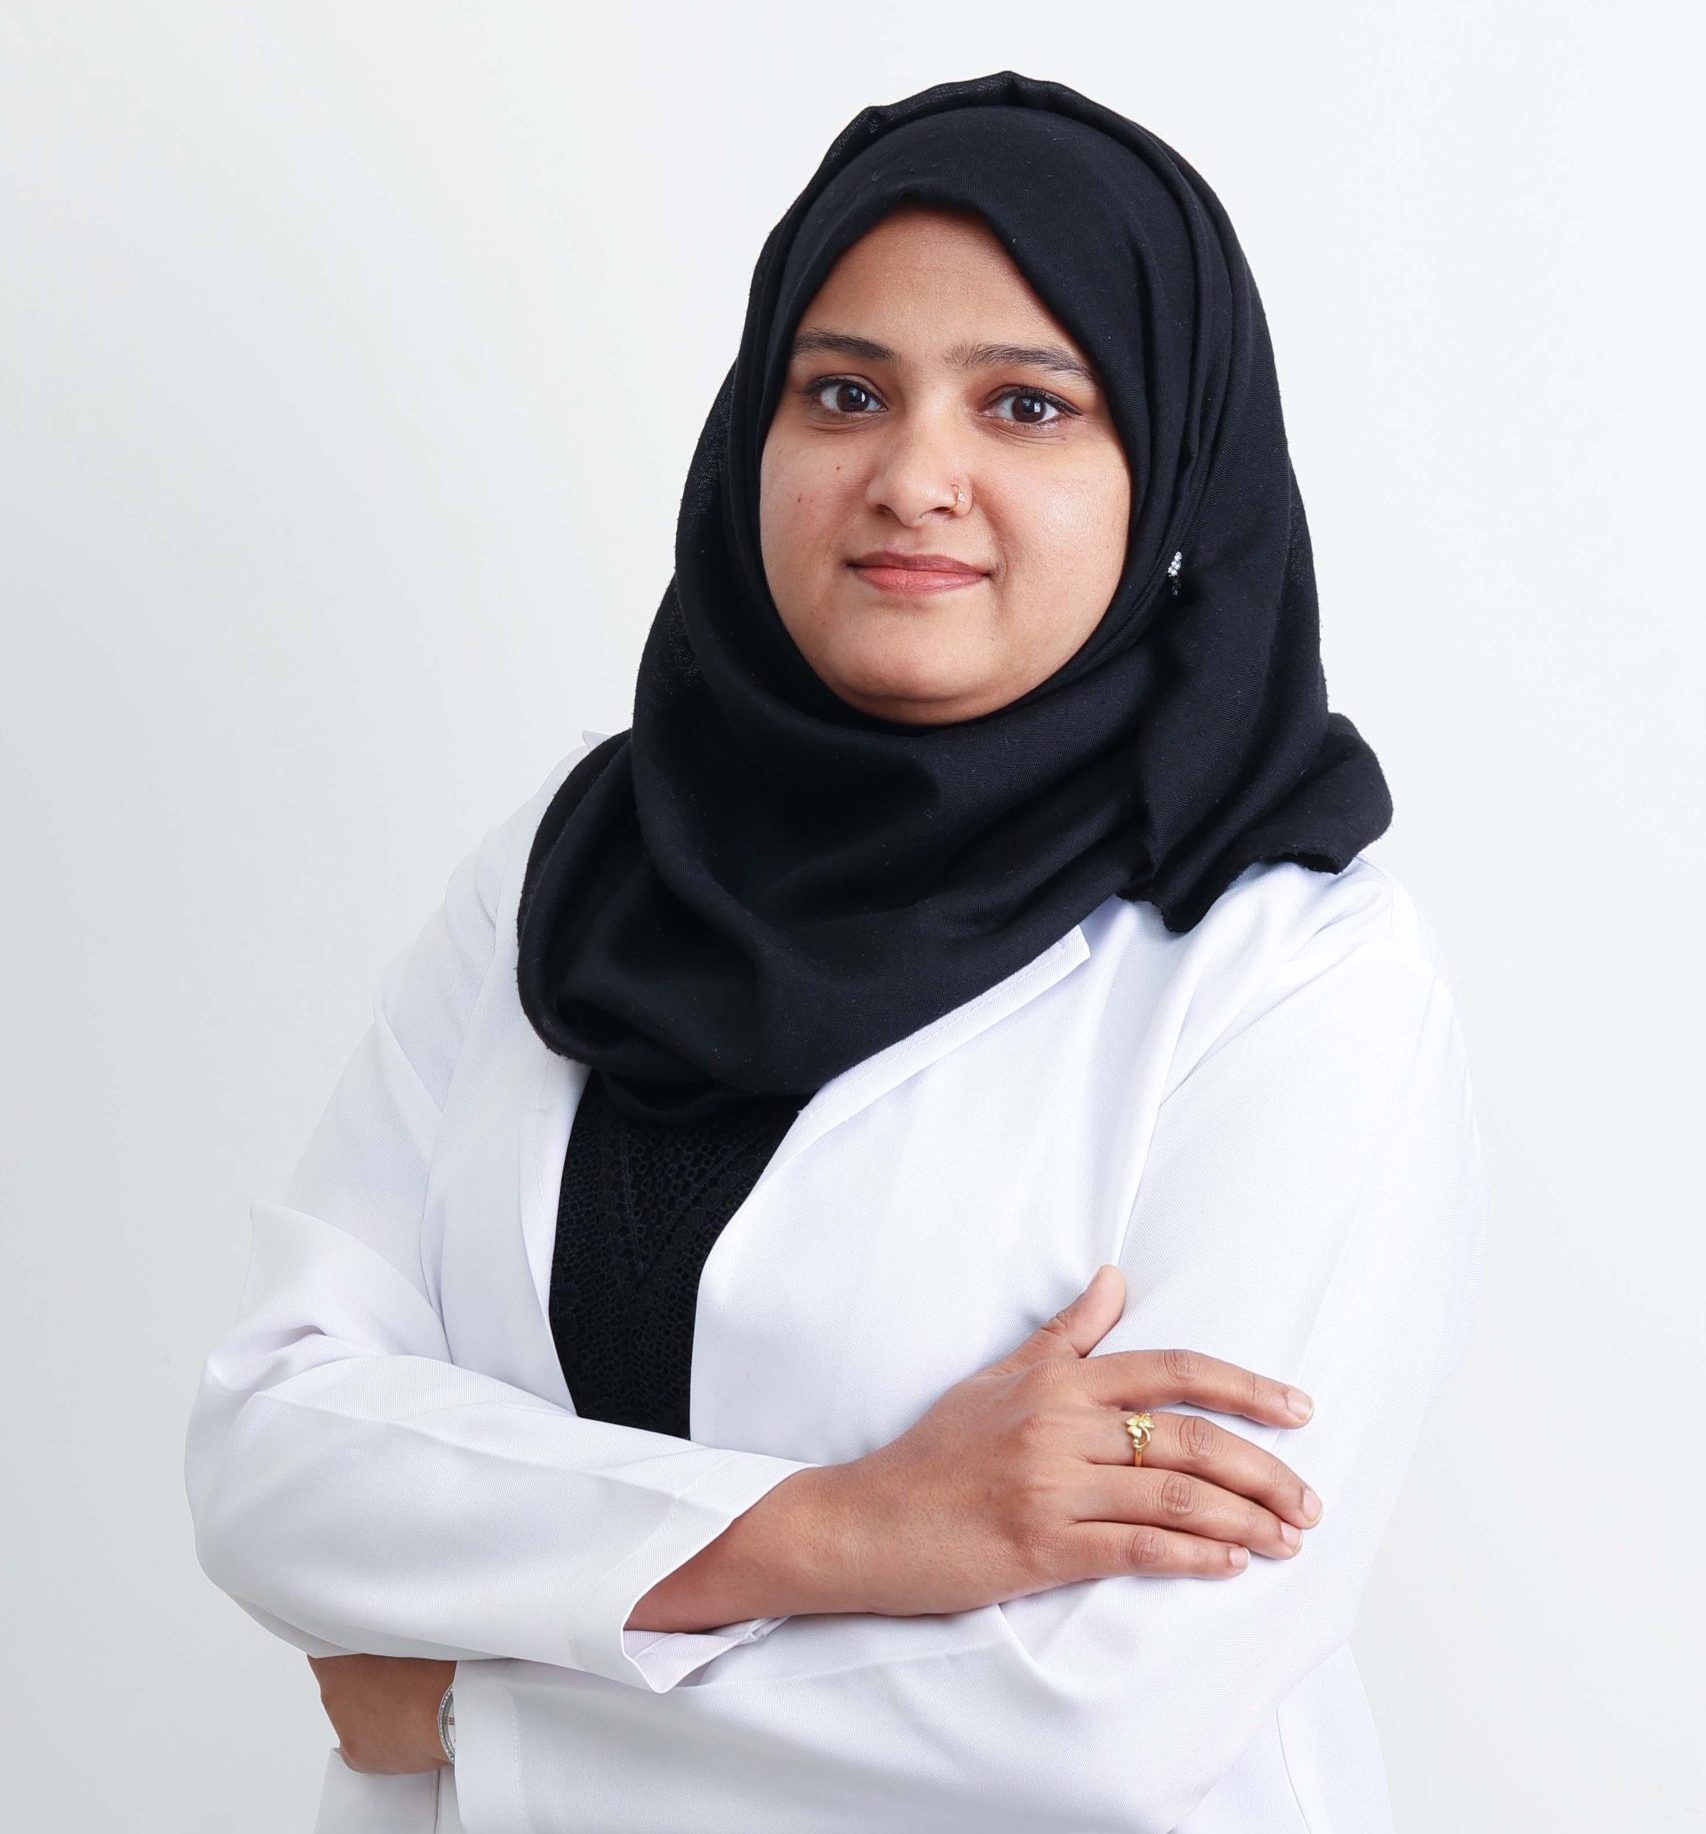 Dr. Hina Ansari